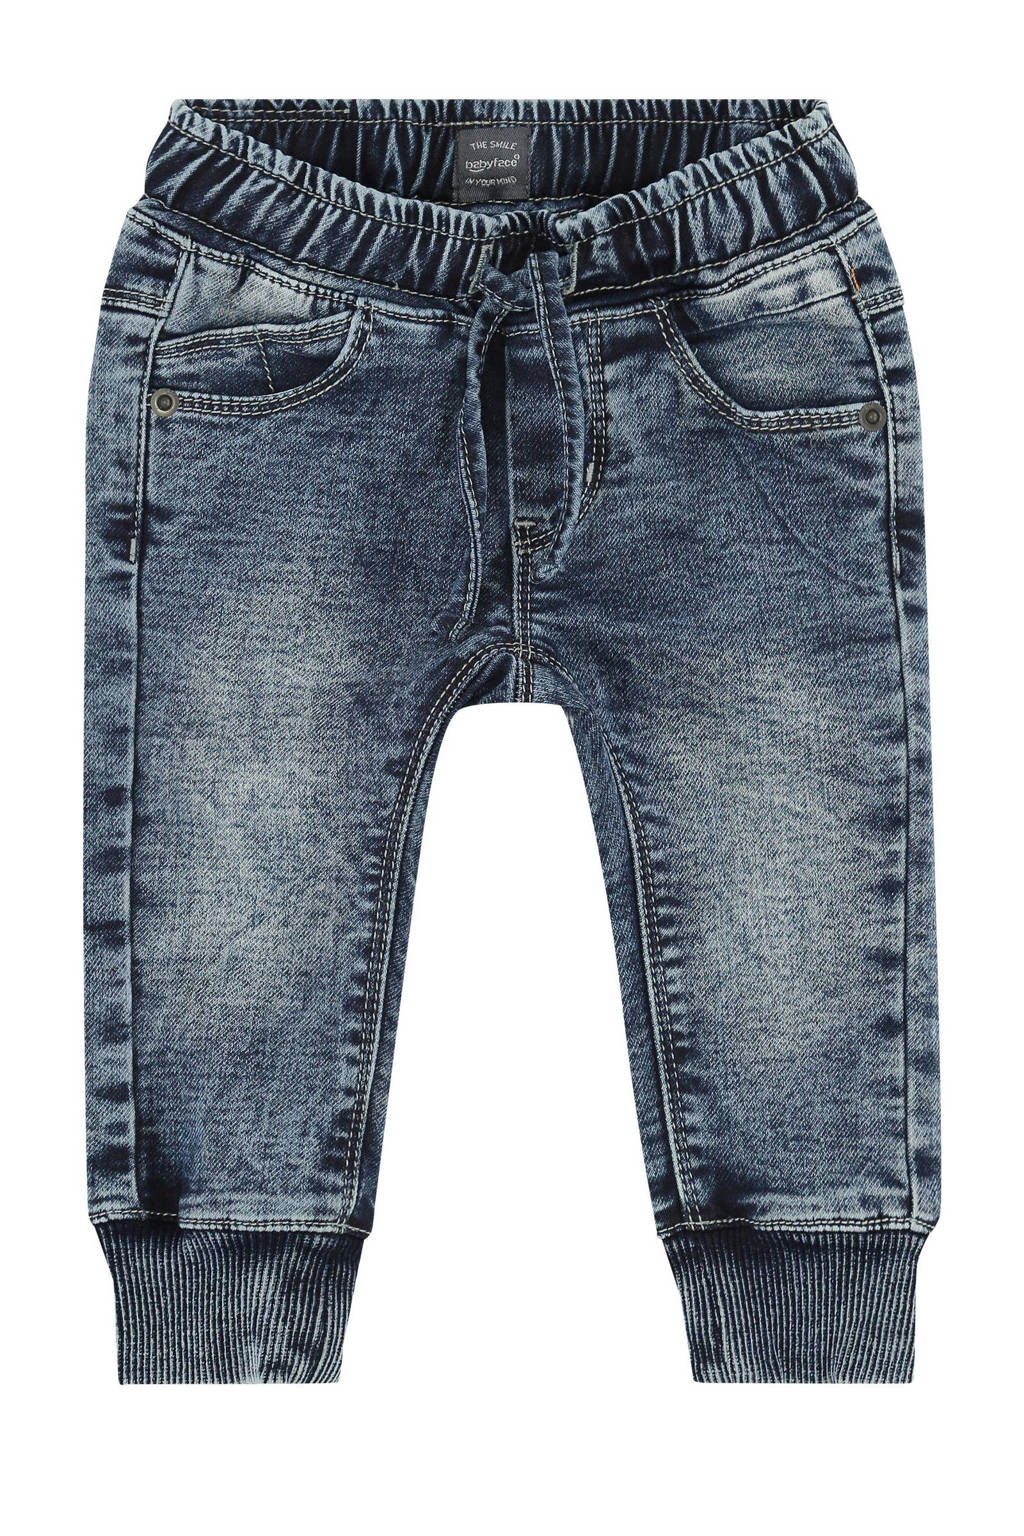 Blauwe jongens Babyface regular fit jeans van jog denim met elastische tailleband